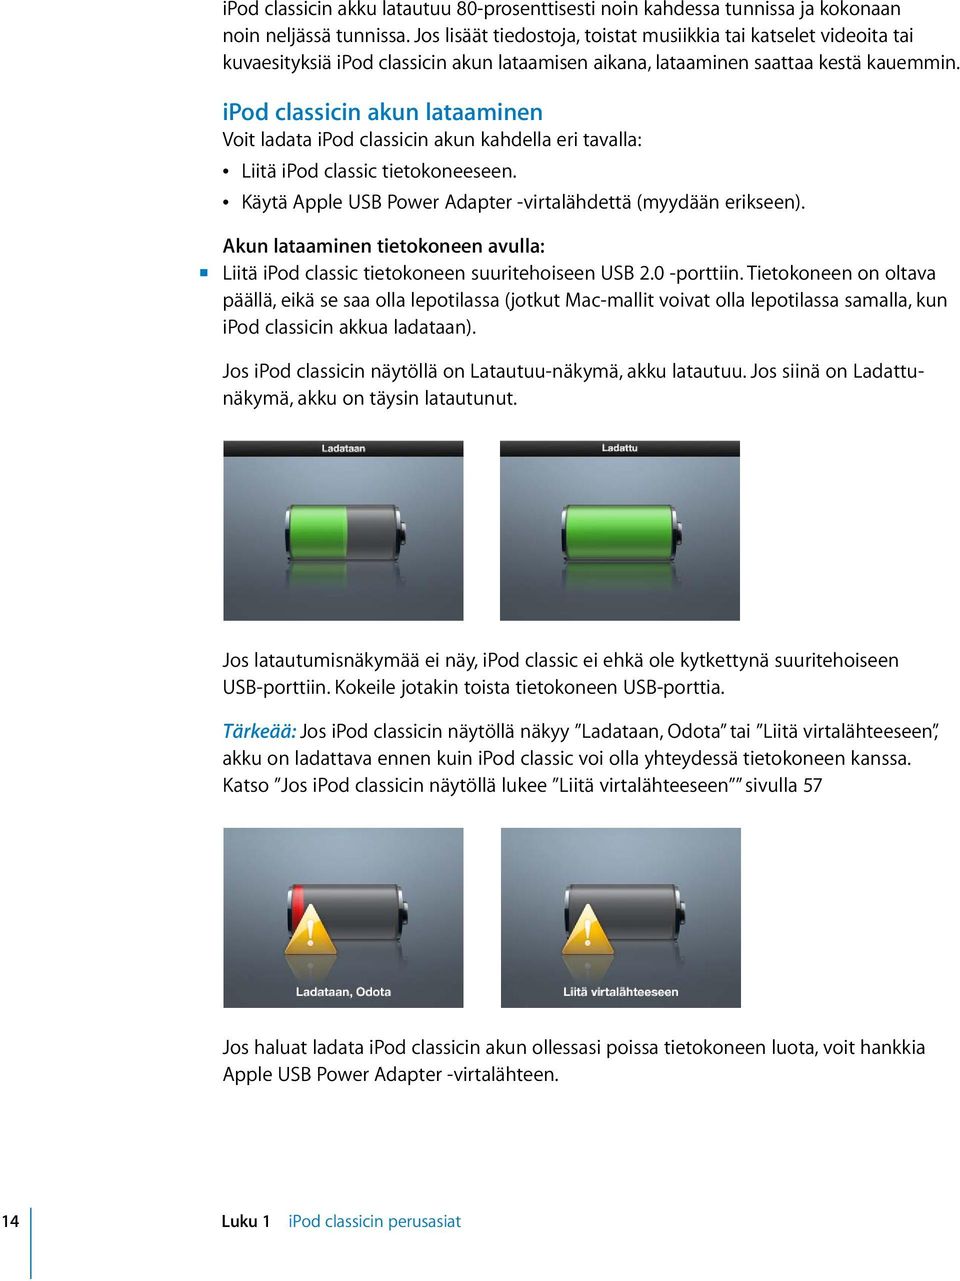 ipod classicin akun lataaminen Voit ladata ipod classicin akun kahdella eri tavalla: Â Liitä ipod classic tietokoneeseen. Â Käytä Apple USB Power Adapter -virtalähdettä (myydään erikseen).